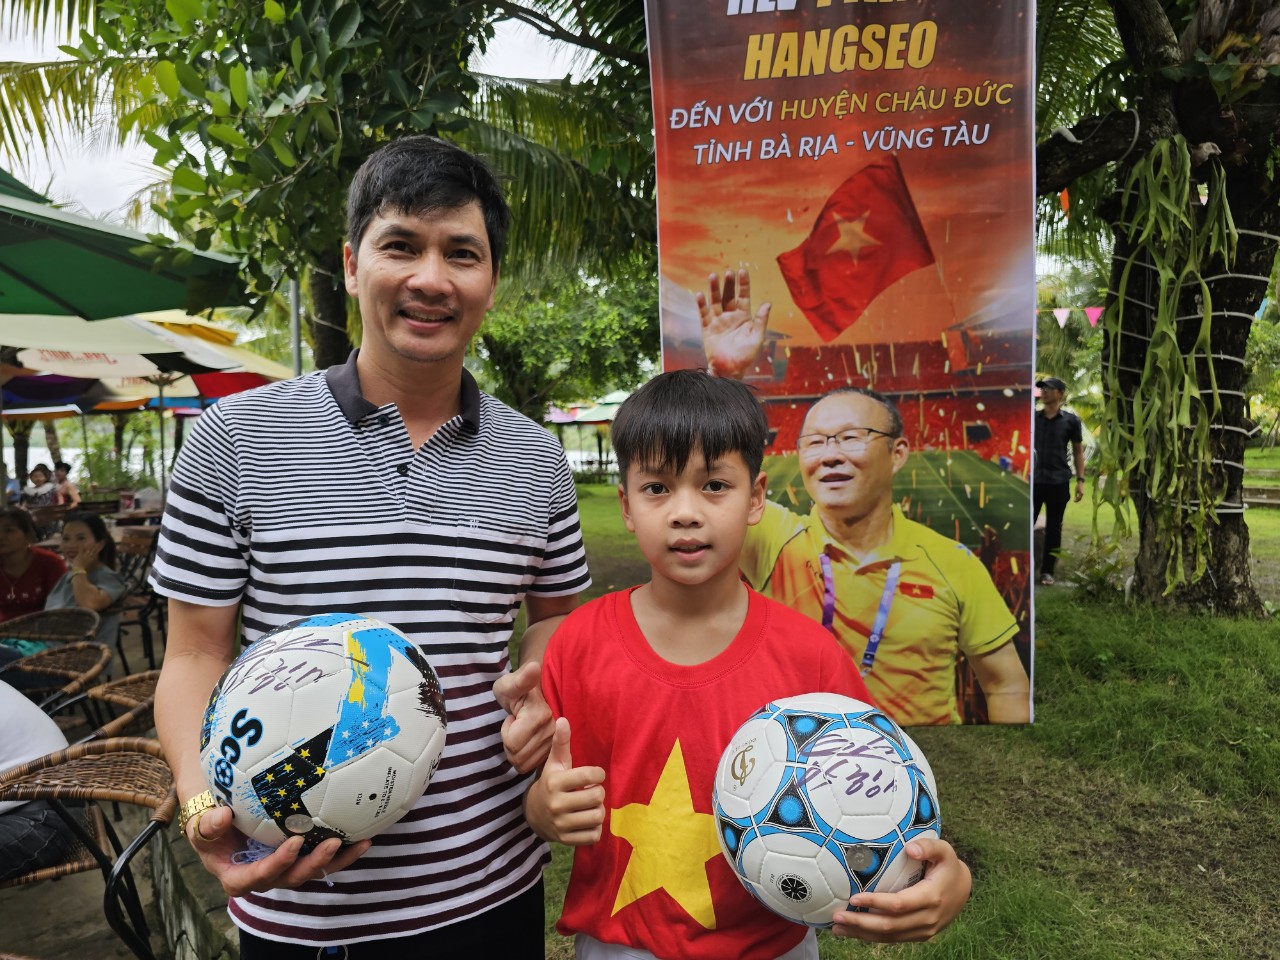 Anh Trân Minh Phú (sinh năm 1982) cùng con trai Trân Minh Khôi (2013) rạng rỡ bên trái bóng có chữ ký của ông Park